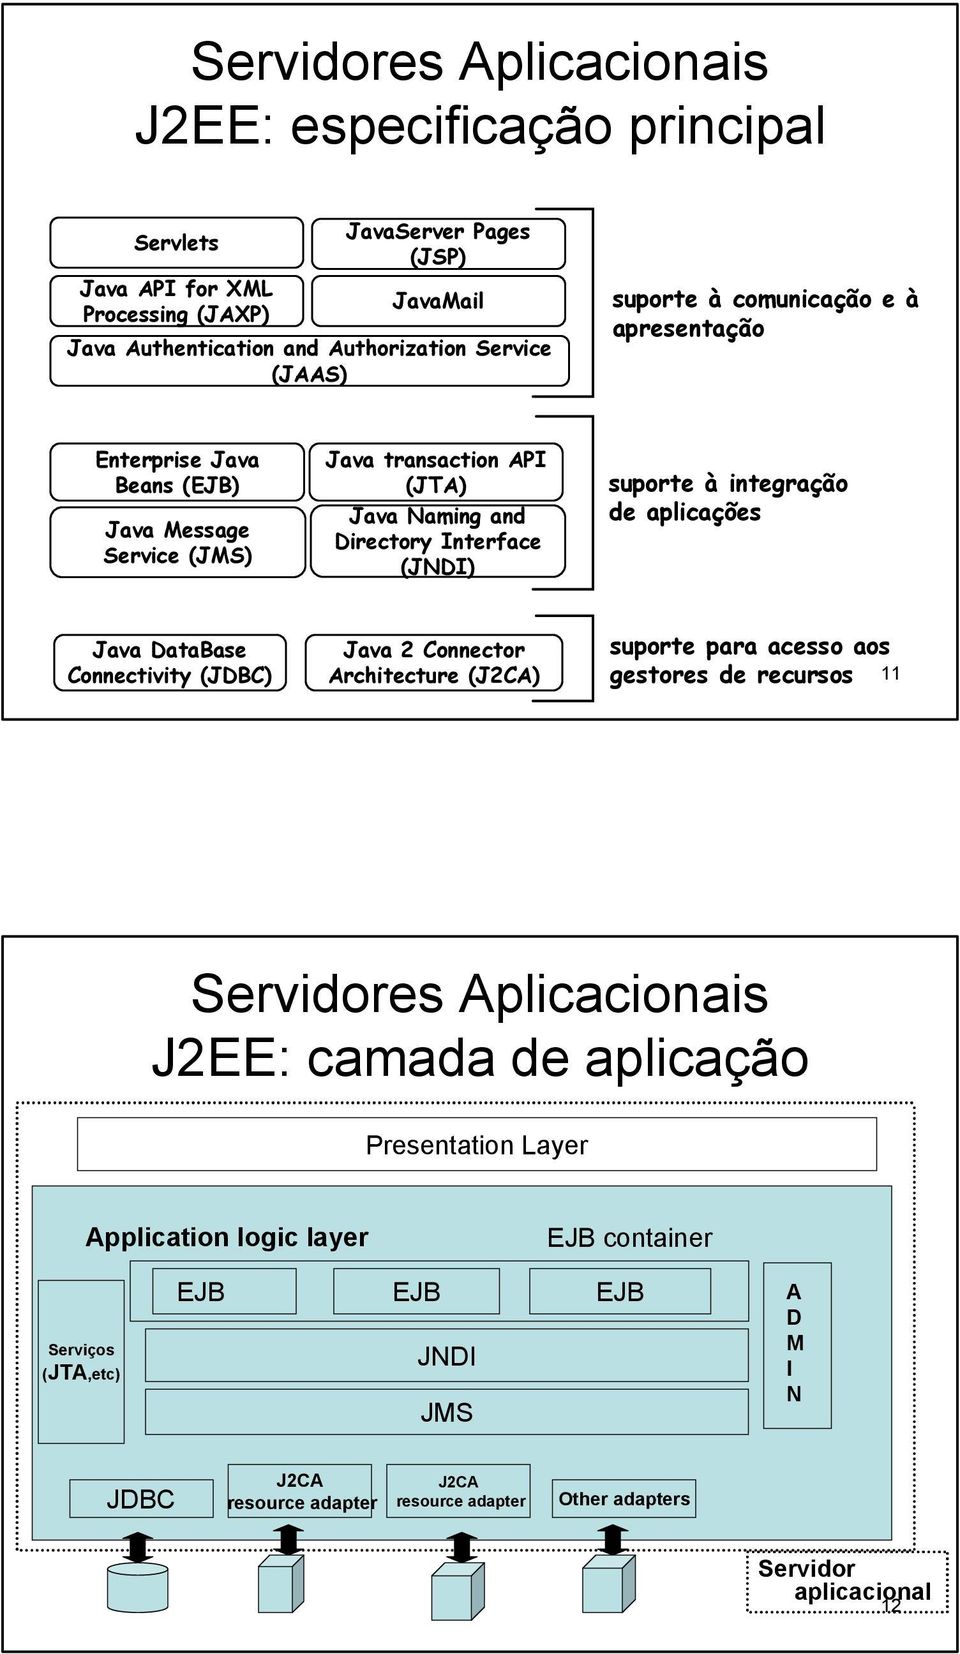 de aplicações Java DataBase Connectivity (JDBC) Java 2 Connector Architecture (J2CA) suporte para acesso aos gestores de recursos 11 Servidores Aplicacionais Presentation